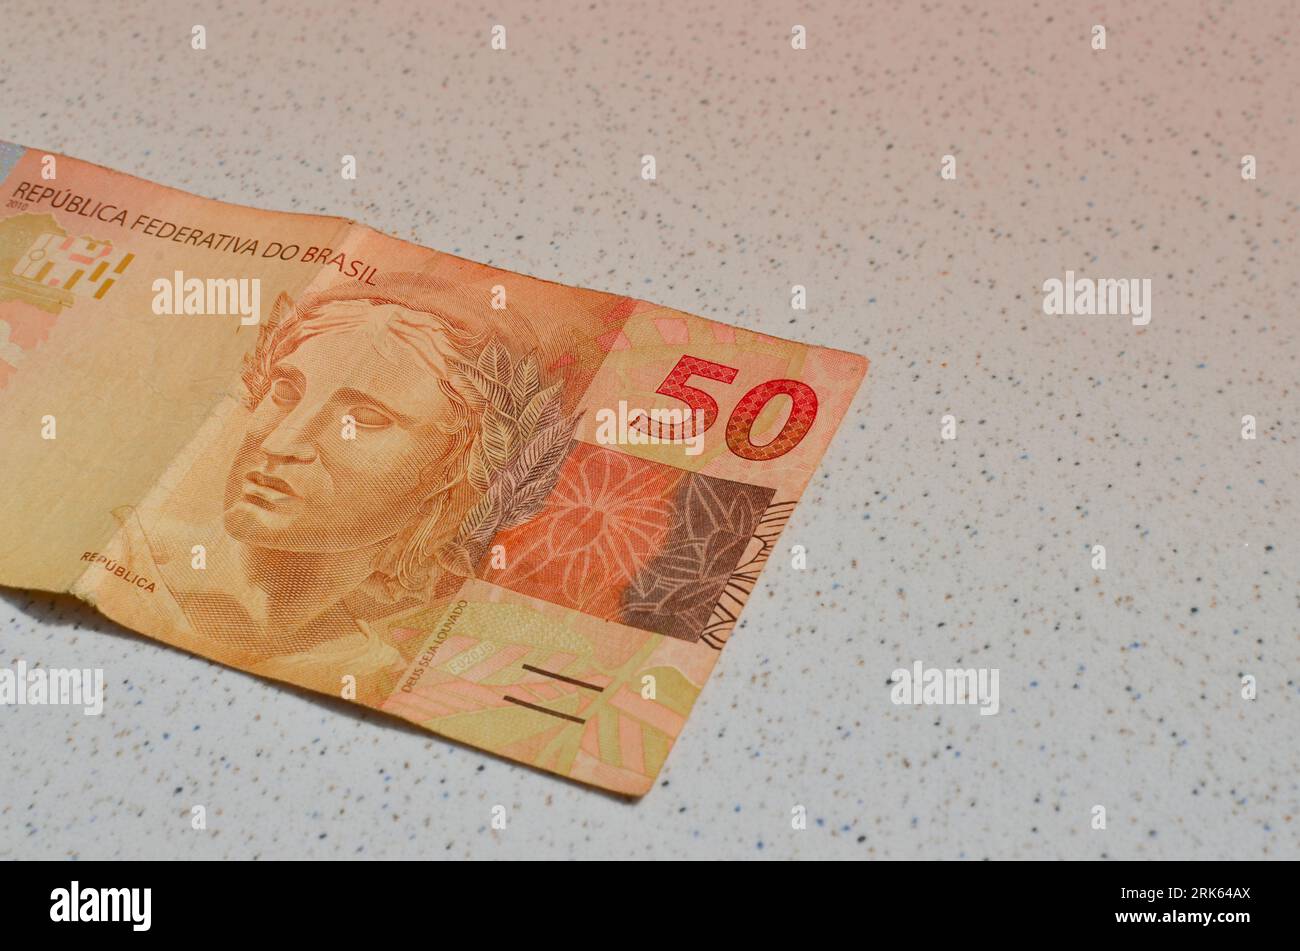 Dettaglio della banconota da 50 reais del Brasile, evidenziata in valuta brasiliana, perfetta per i concetti finanziari. Casa da Moeda do Brasil, in rappresentanza del Foto Stock